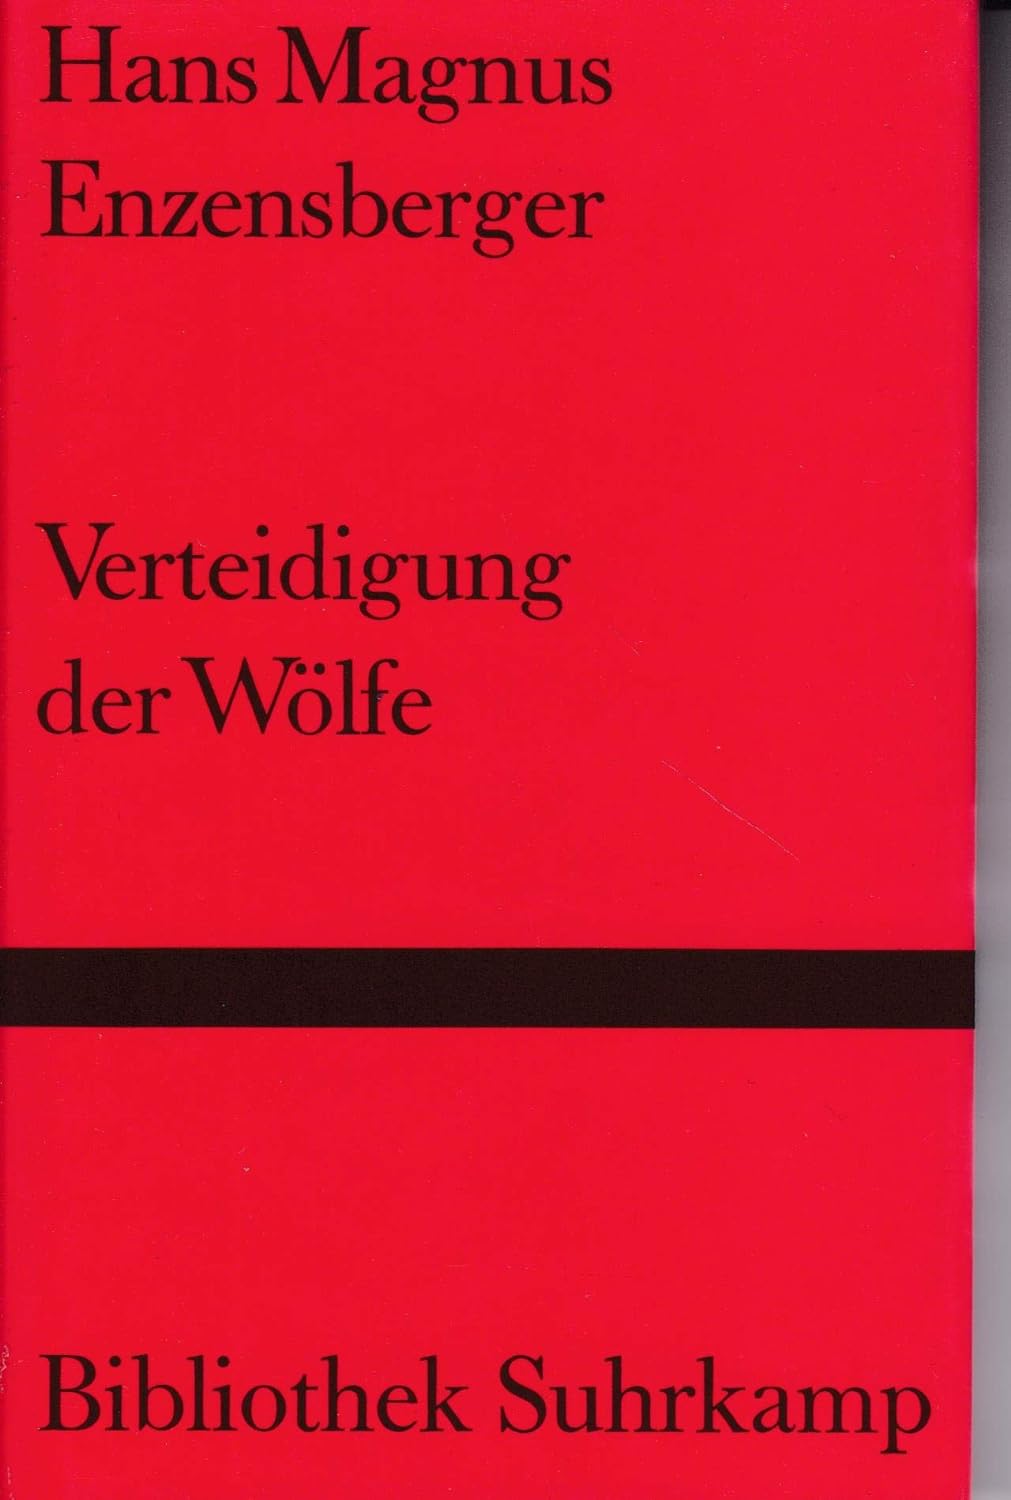 Hans Magnus Enzensberger: Verteidigung der Wölfe. (Hardcover, German language, 1957, Suhrkamp)